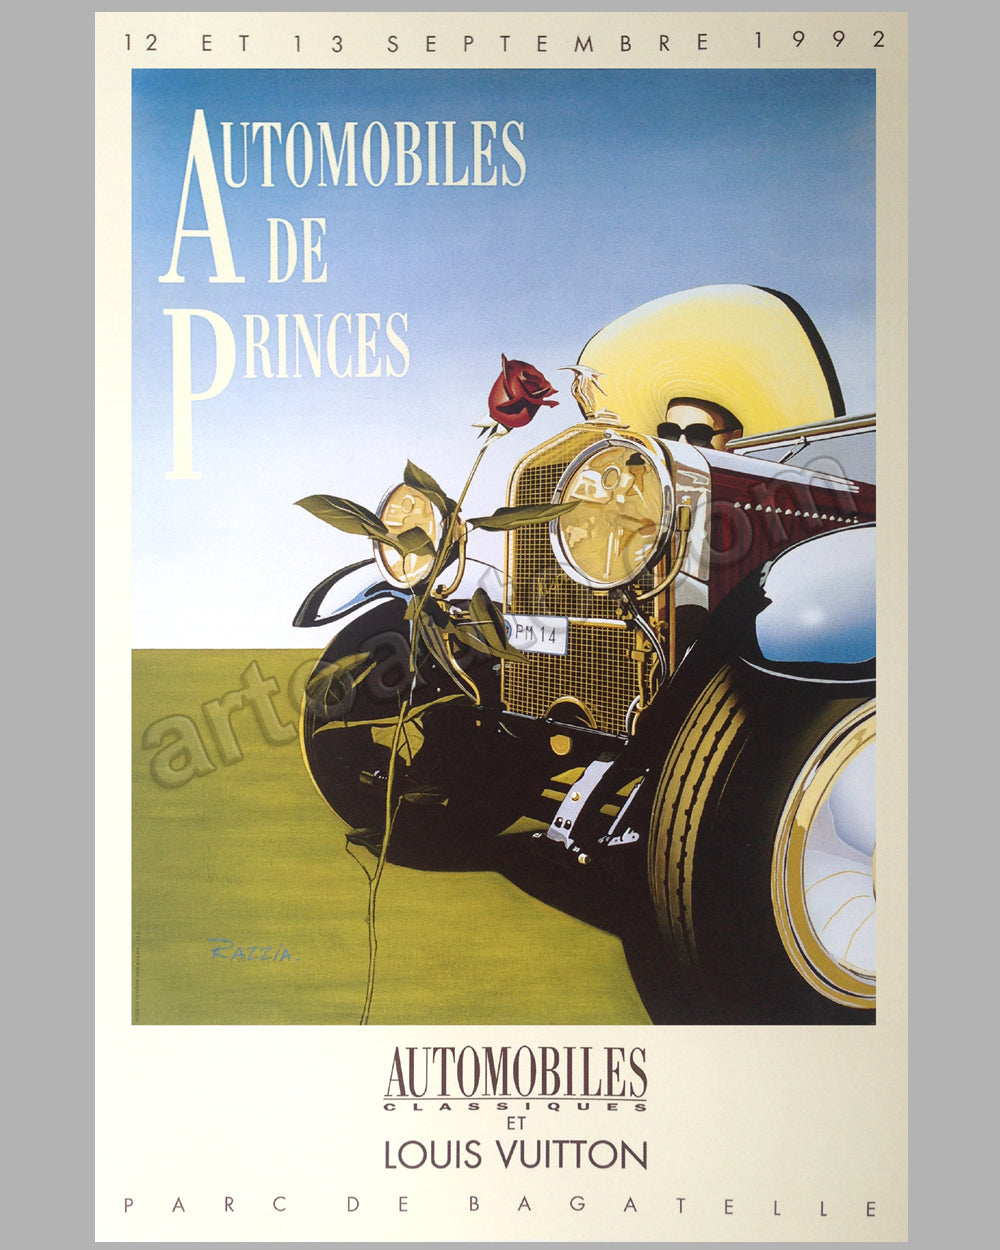 Automobiles de Princes 1992 large poster by Razzia